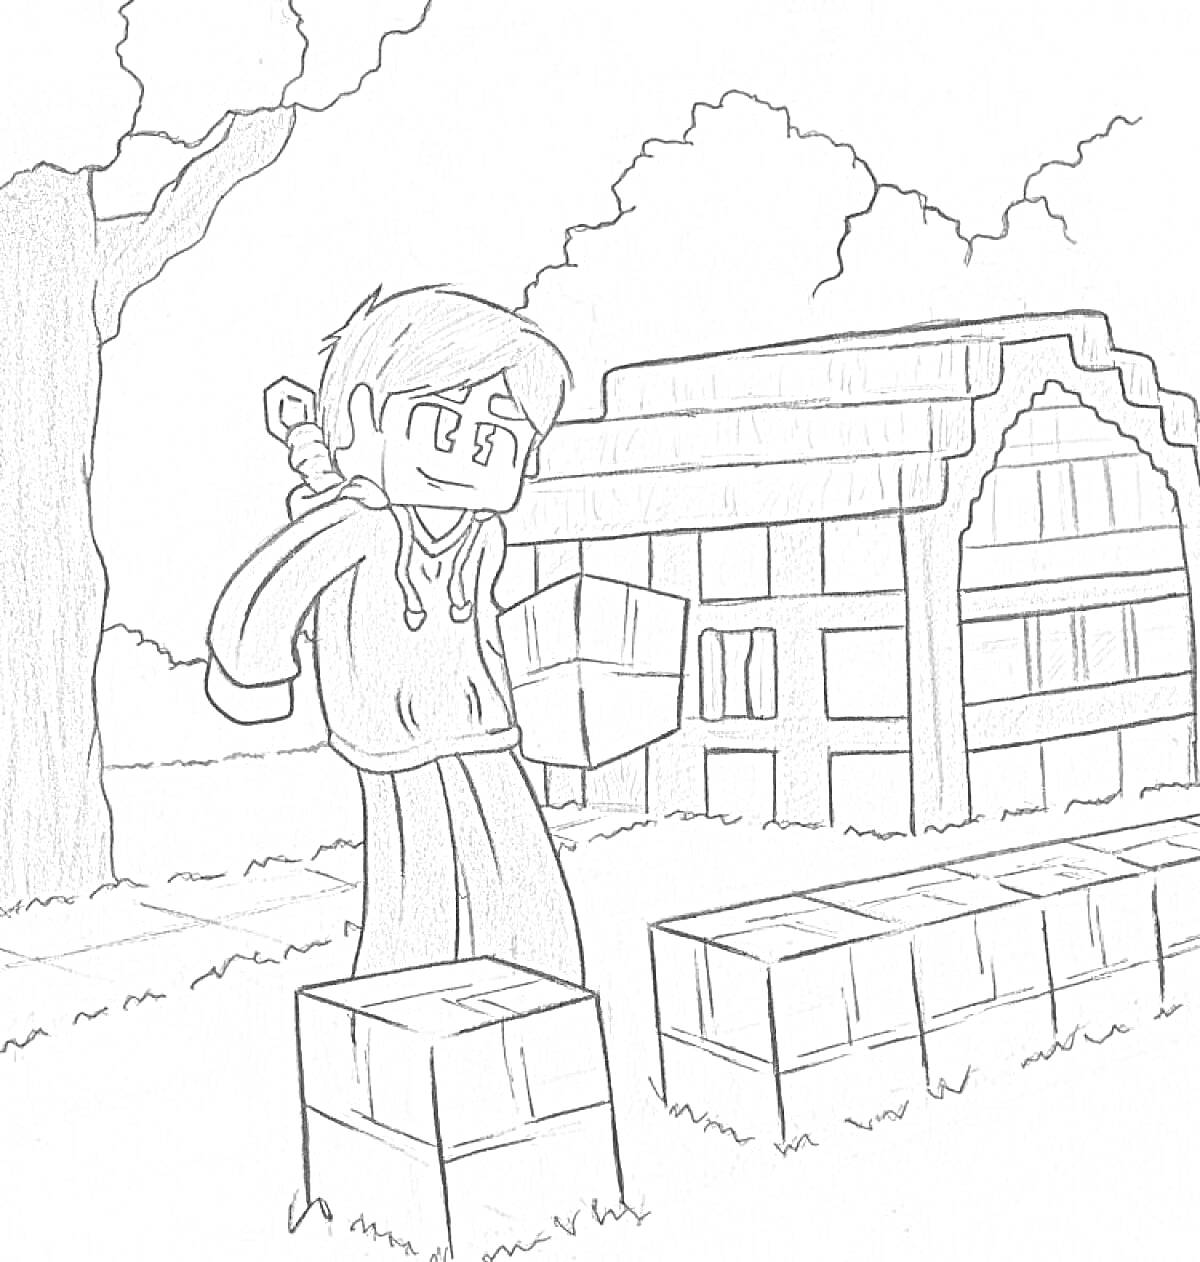 Раскраска персонаж с киркой, стоящий перед блоками на фоне здания и дерева